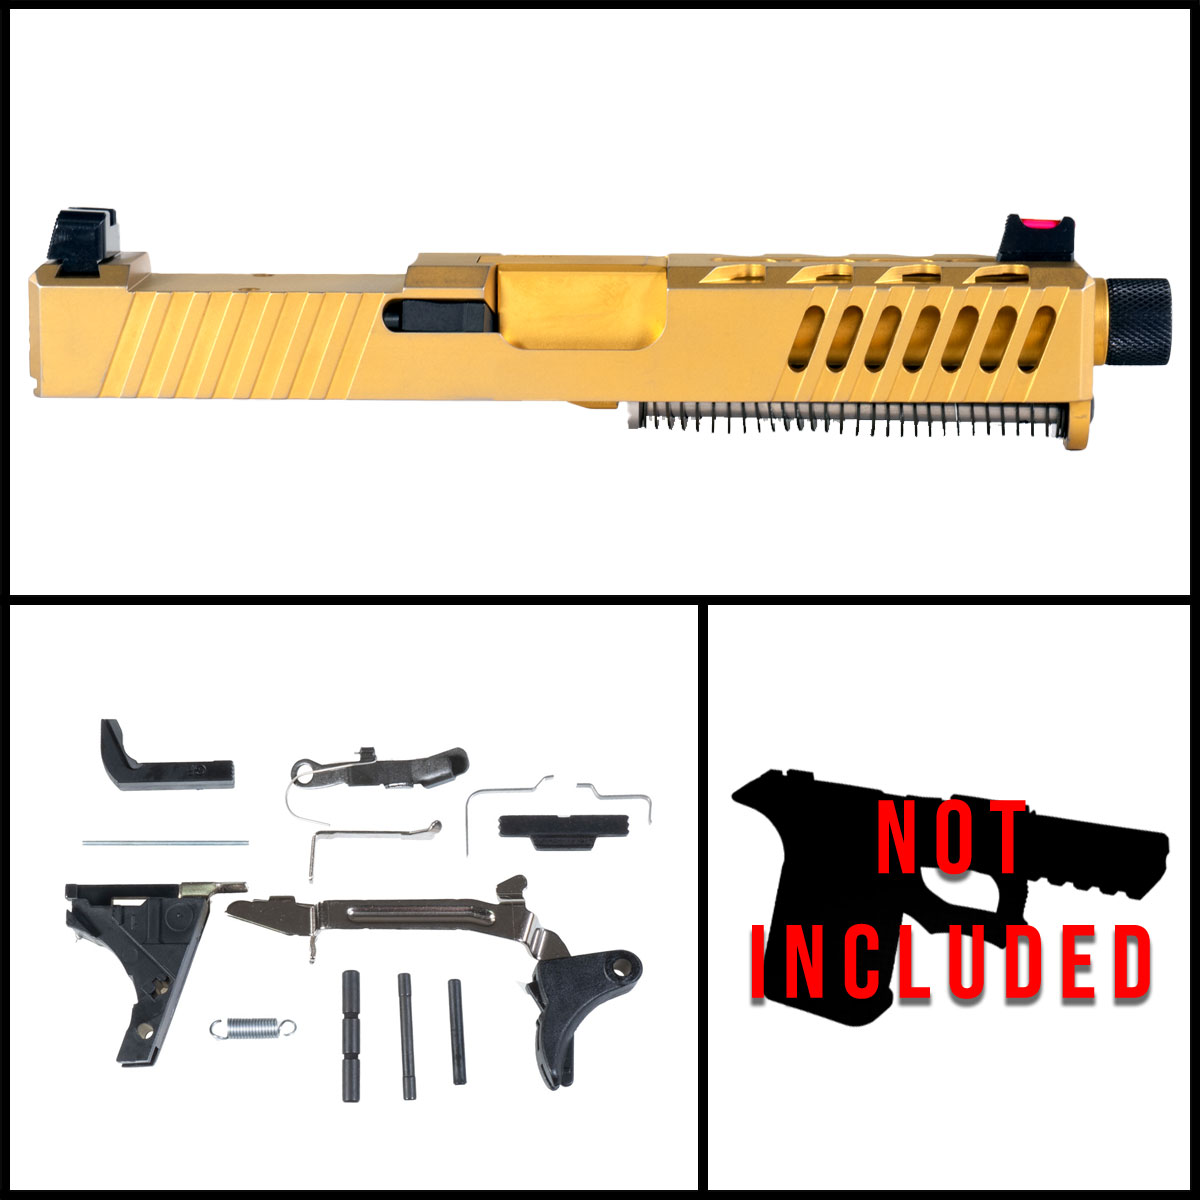 DTT 'AU-197' 9mm Full Pistol Build Kit (Everything Minus Frame) - Glock 19 Compatible